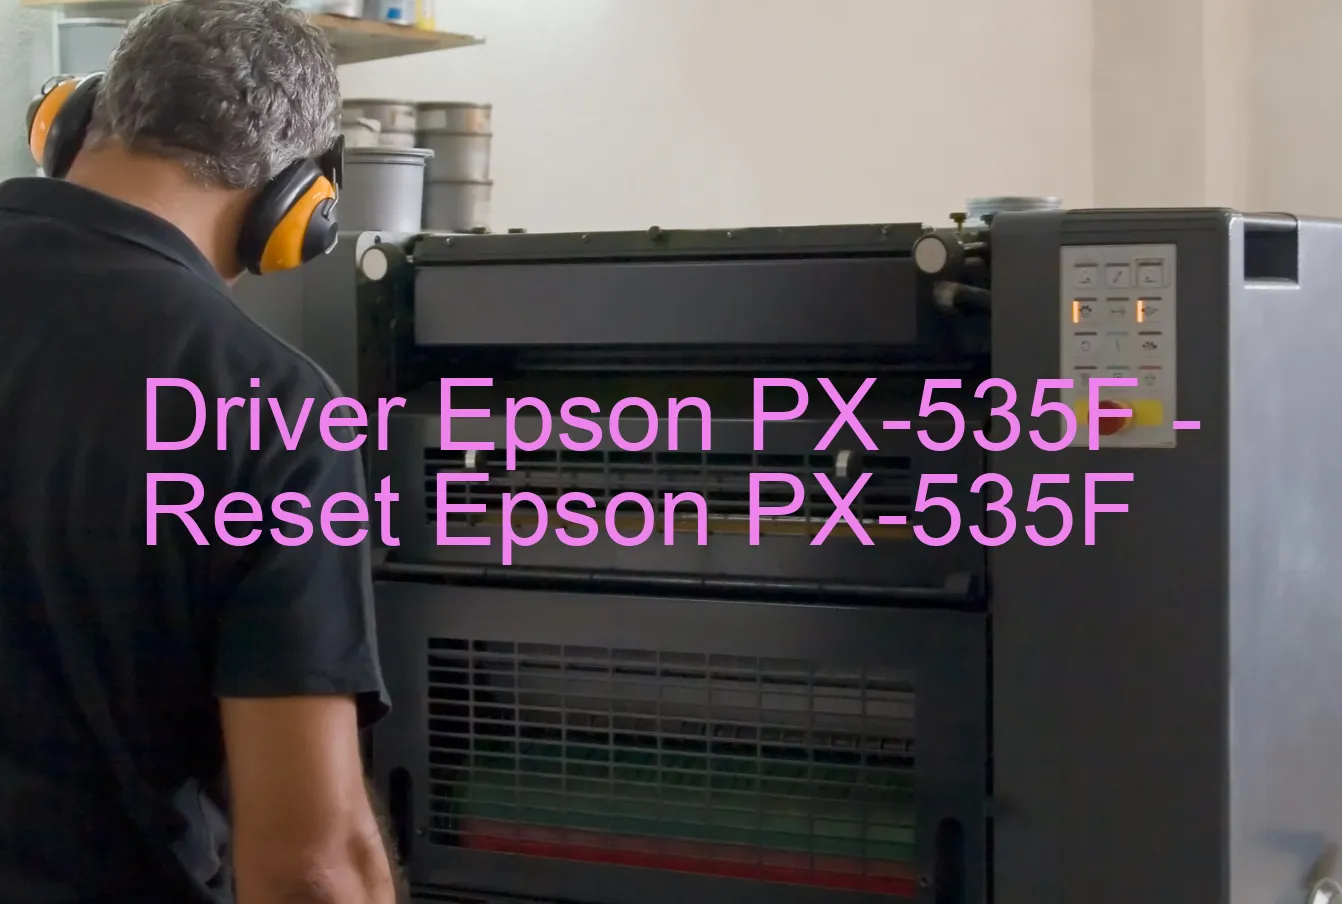 Epson PX-535Fのドライバー、Epson PX-535Fのリセットソフトウェア